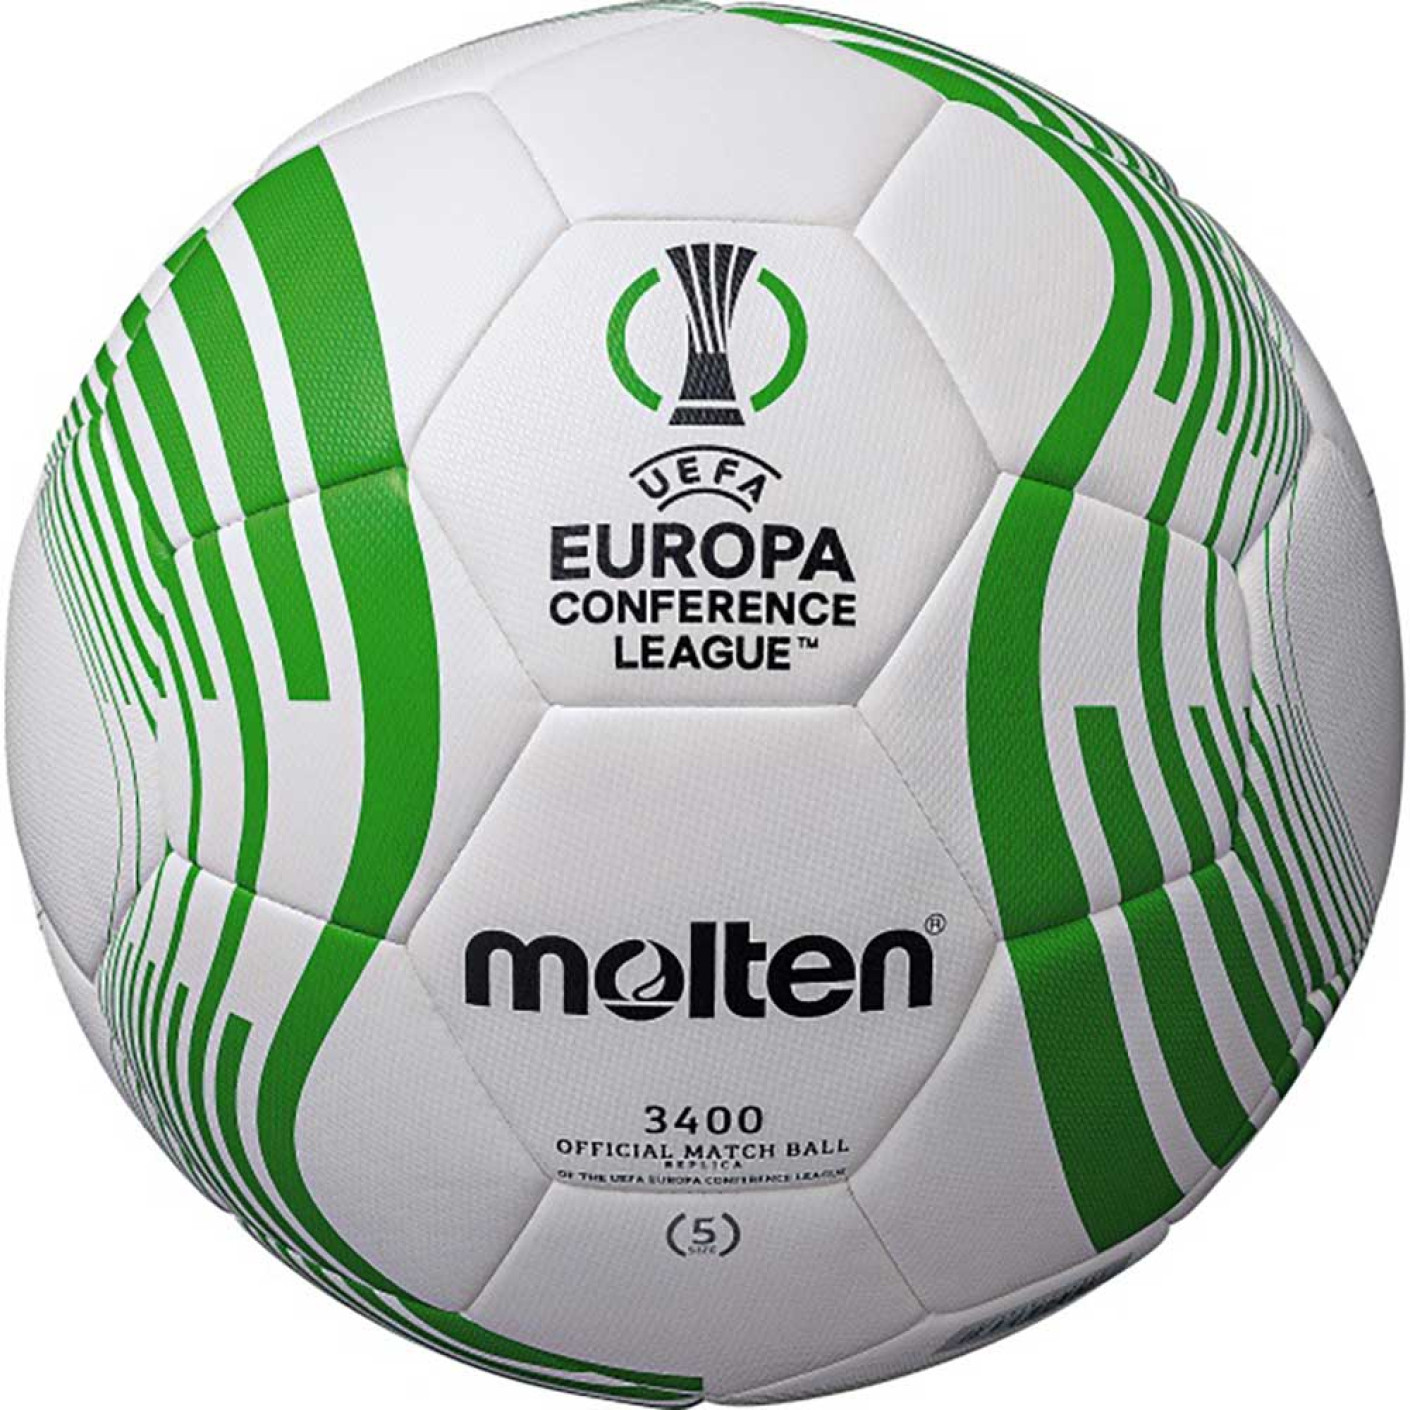 Molten Conference League Hybrid Training Ballon d'Entraînement Taille 5 2023-2024 Blanc Noir Vert